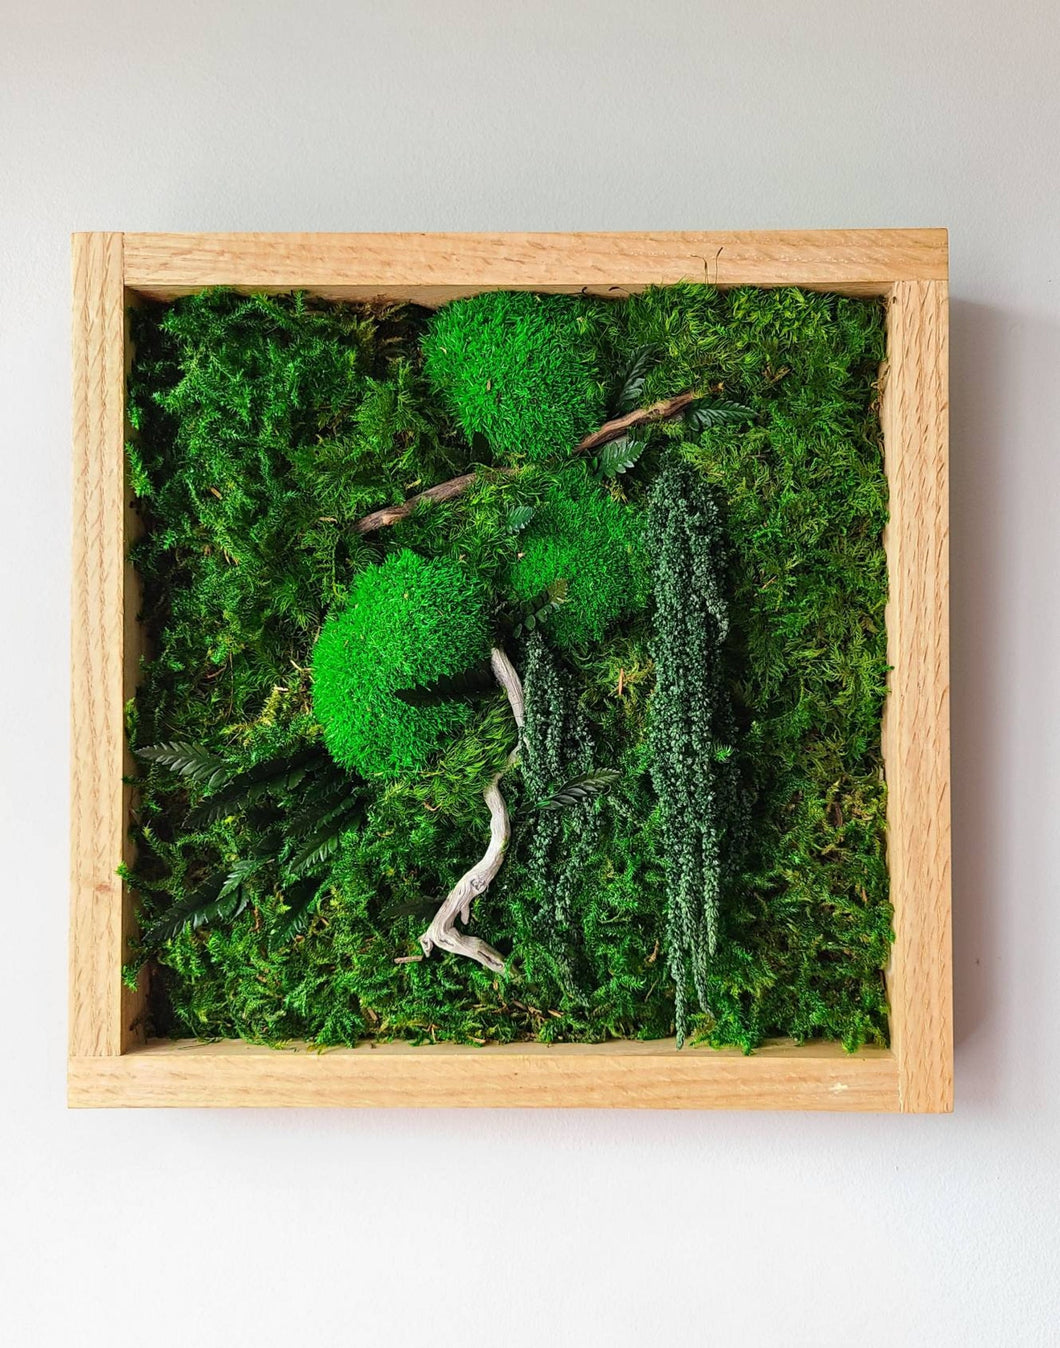 Green gem moss